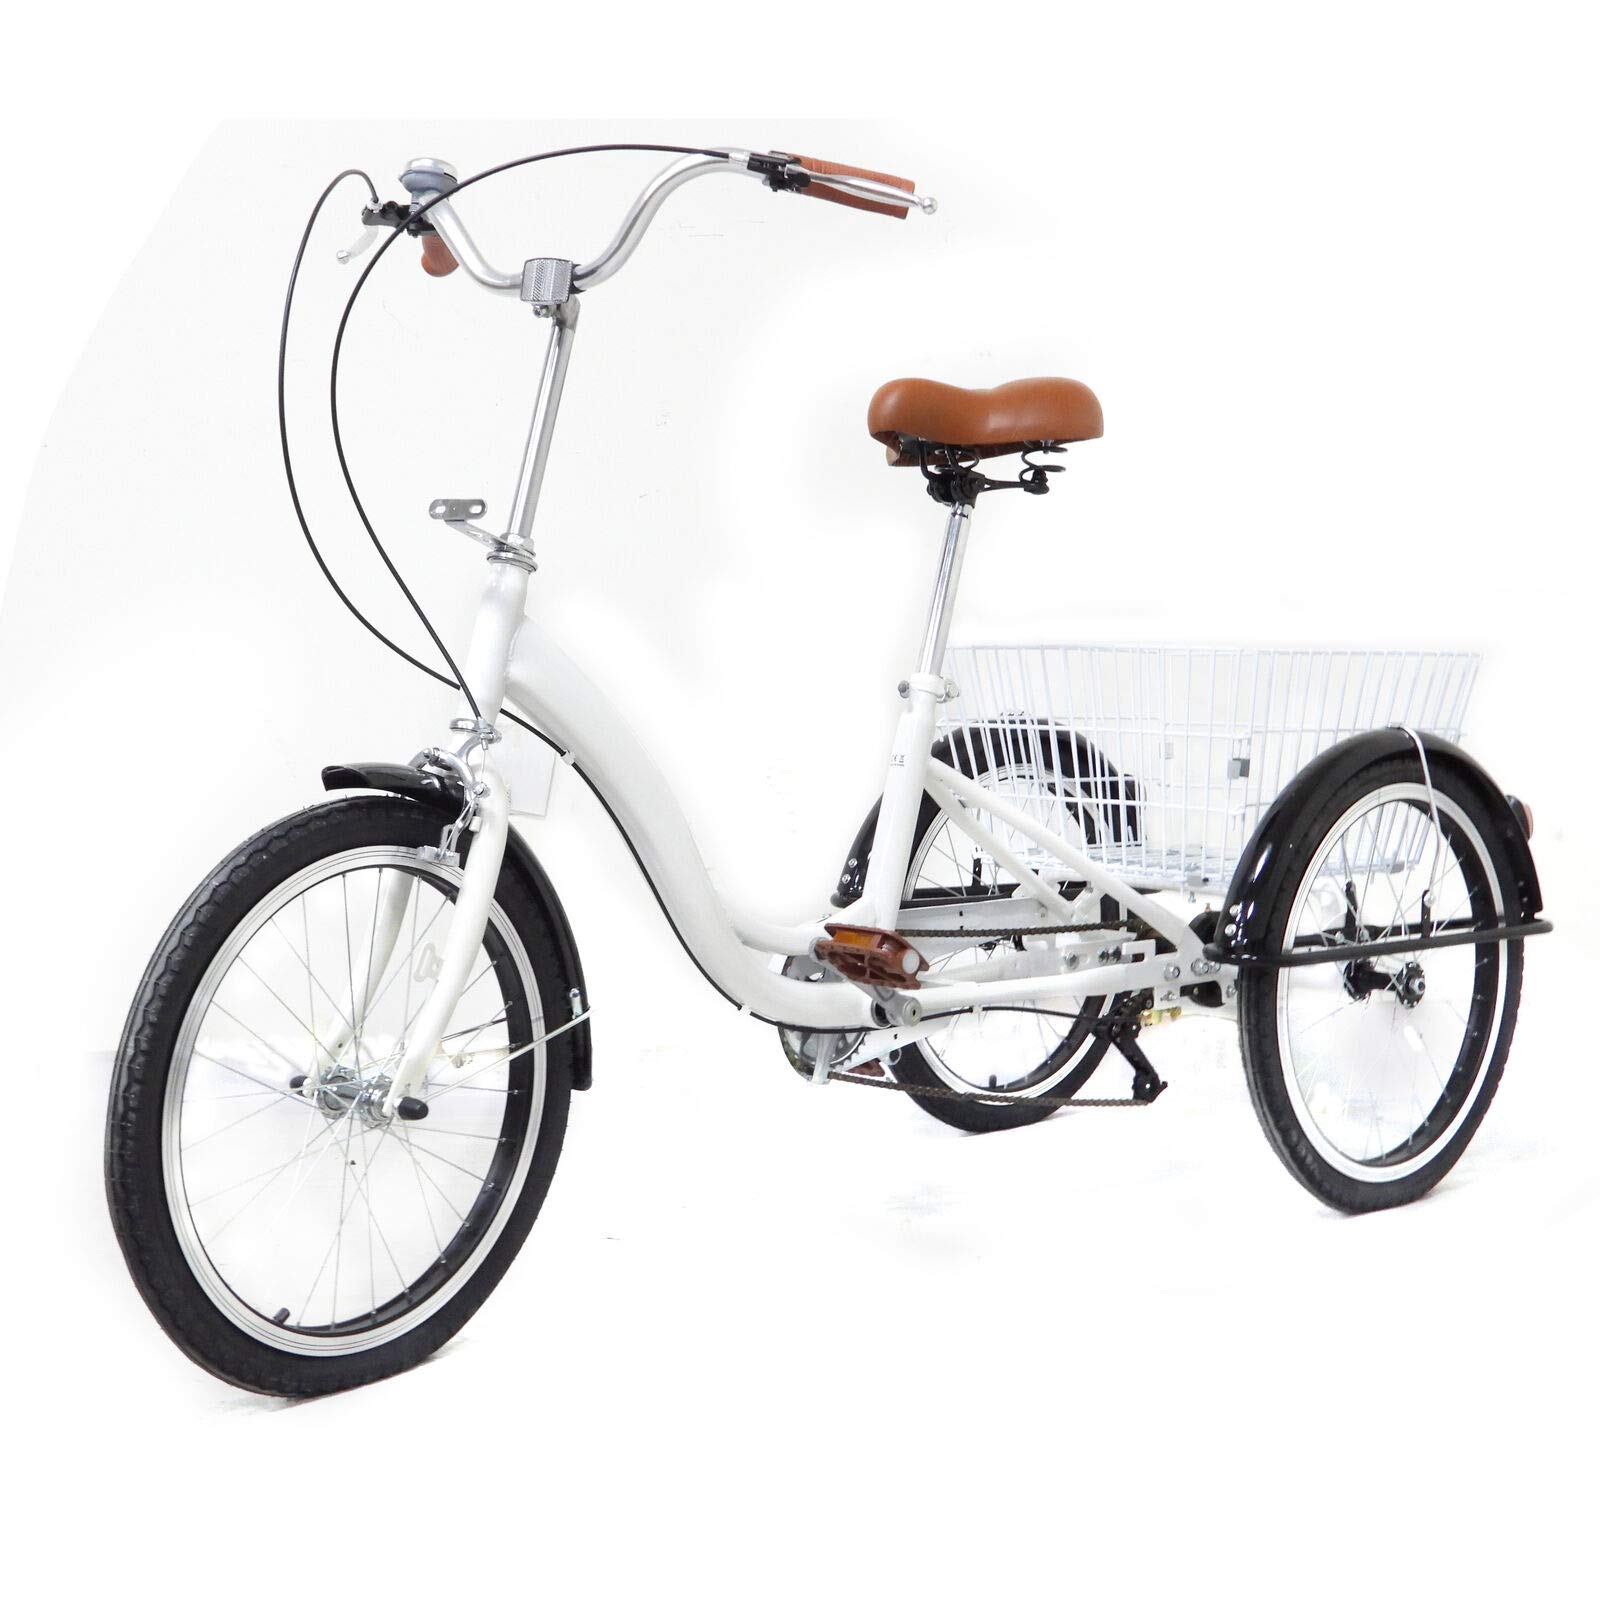 OUKANING 20 Zoll Räder Dreirad für Erwachsene Seniorenrad Erwachsenendreirad Weiß Korb